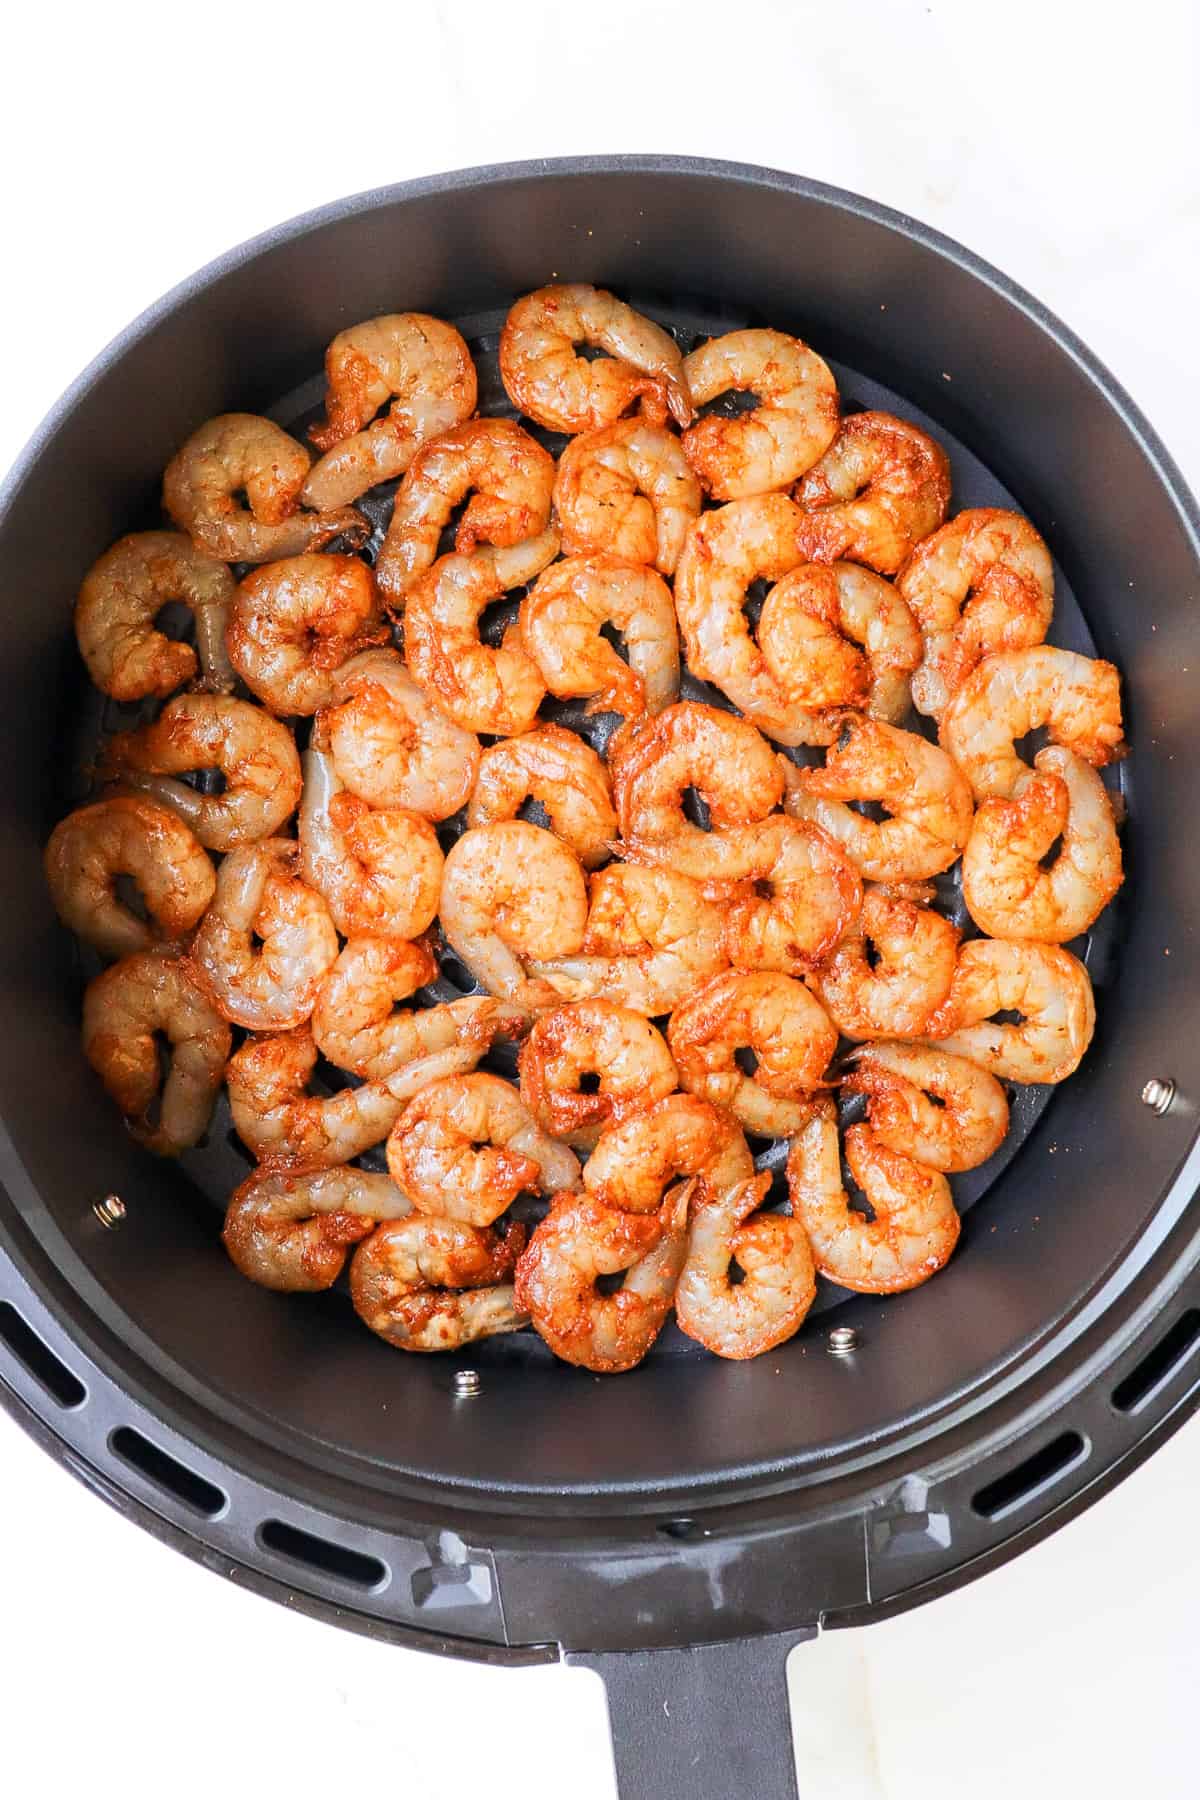 Seasoned shrimp in air fryer basket.